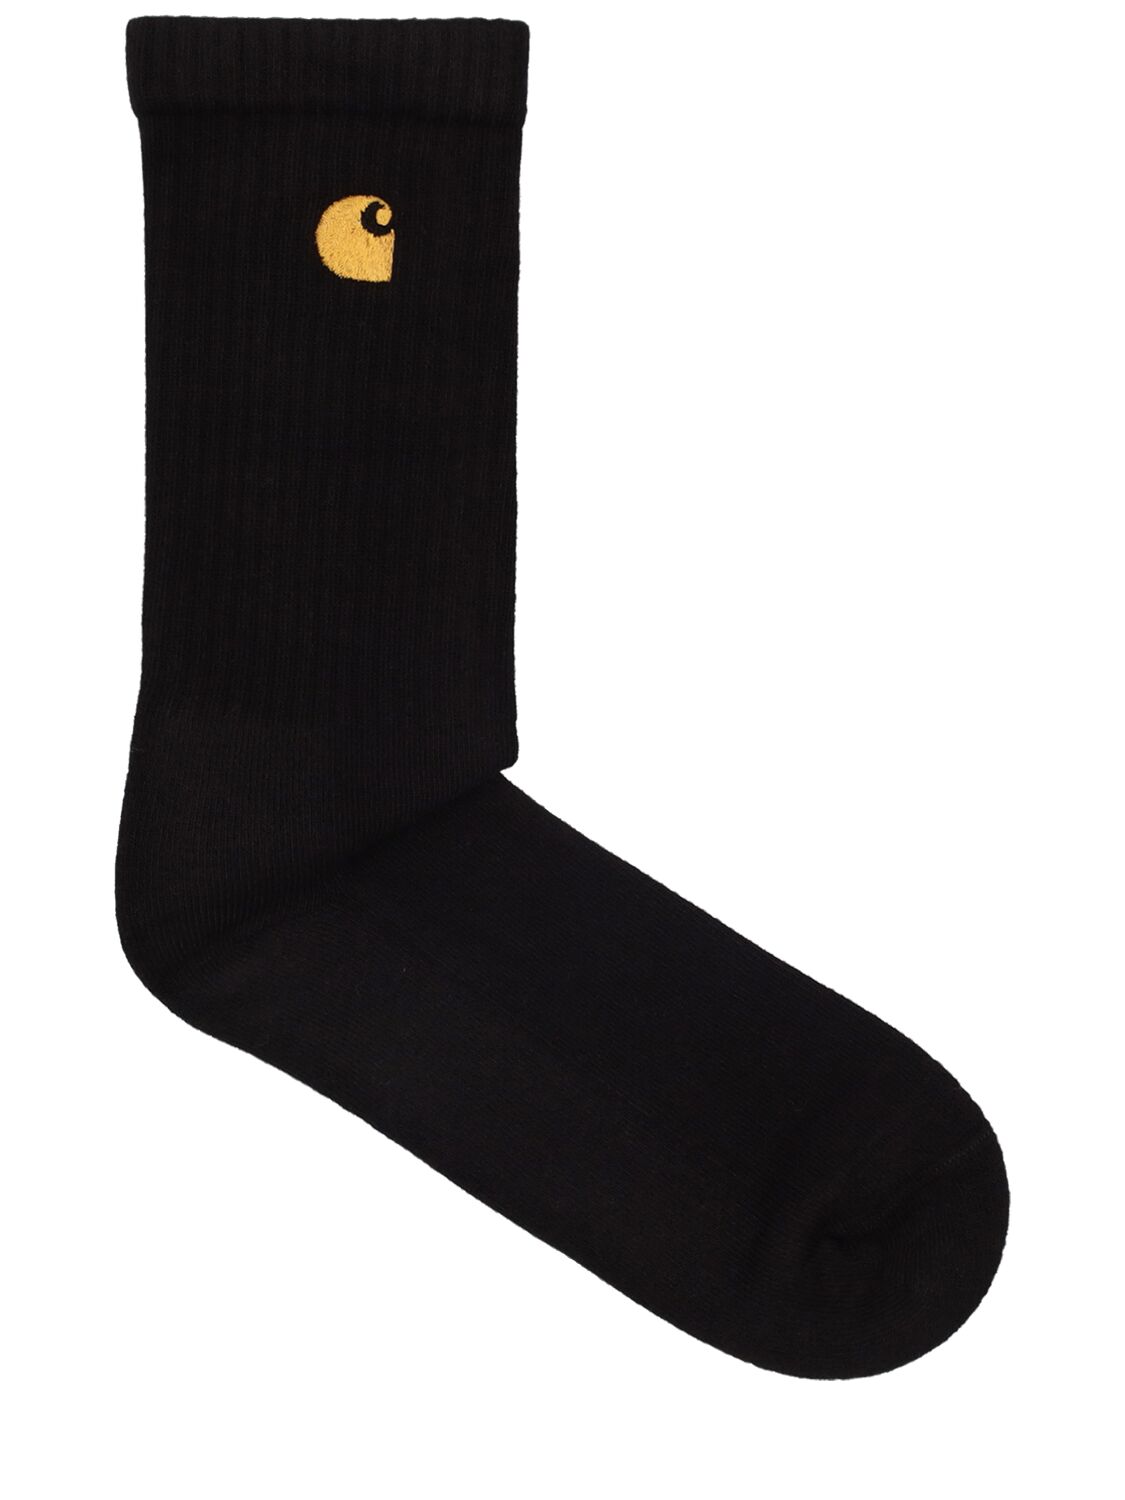 Carhartt Chase Socks In Black,gold